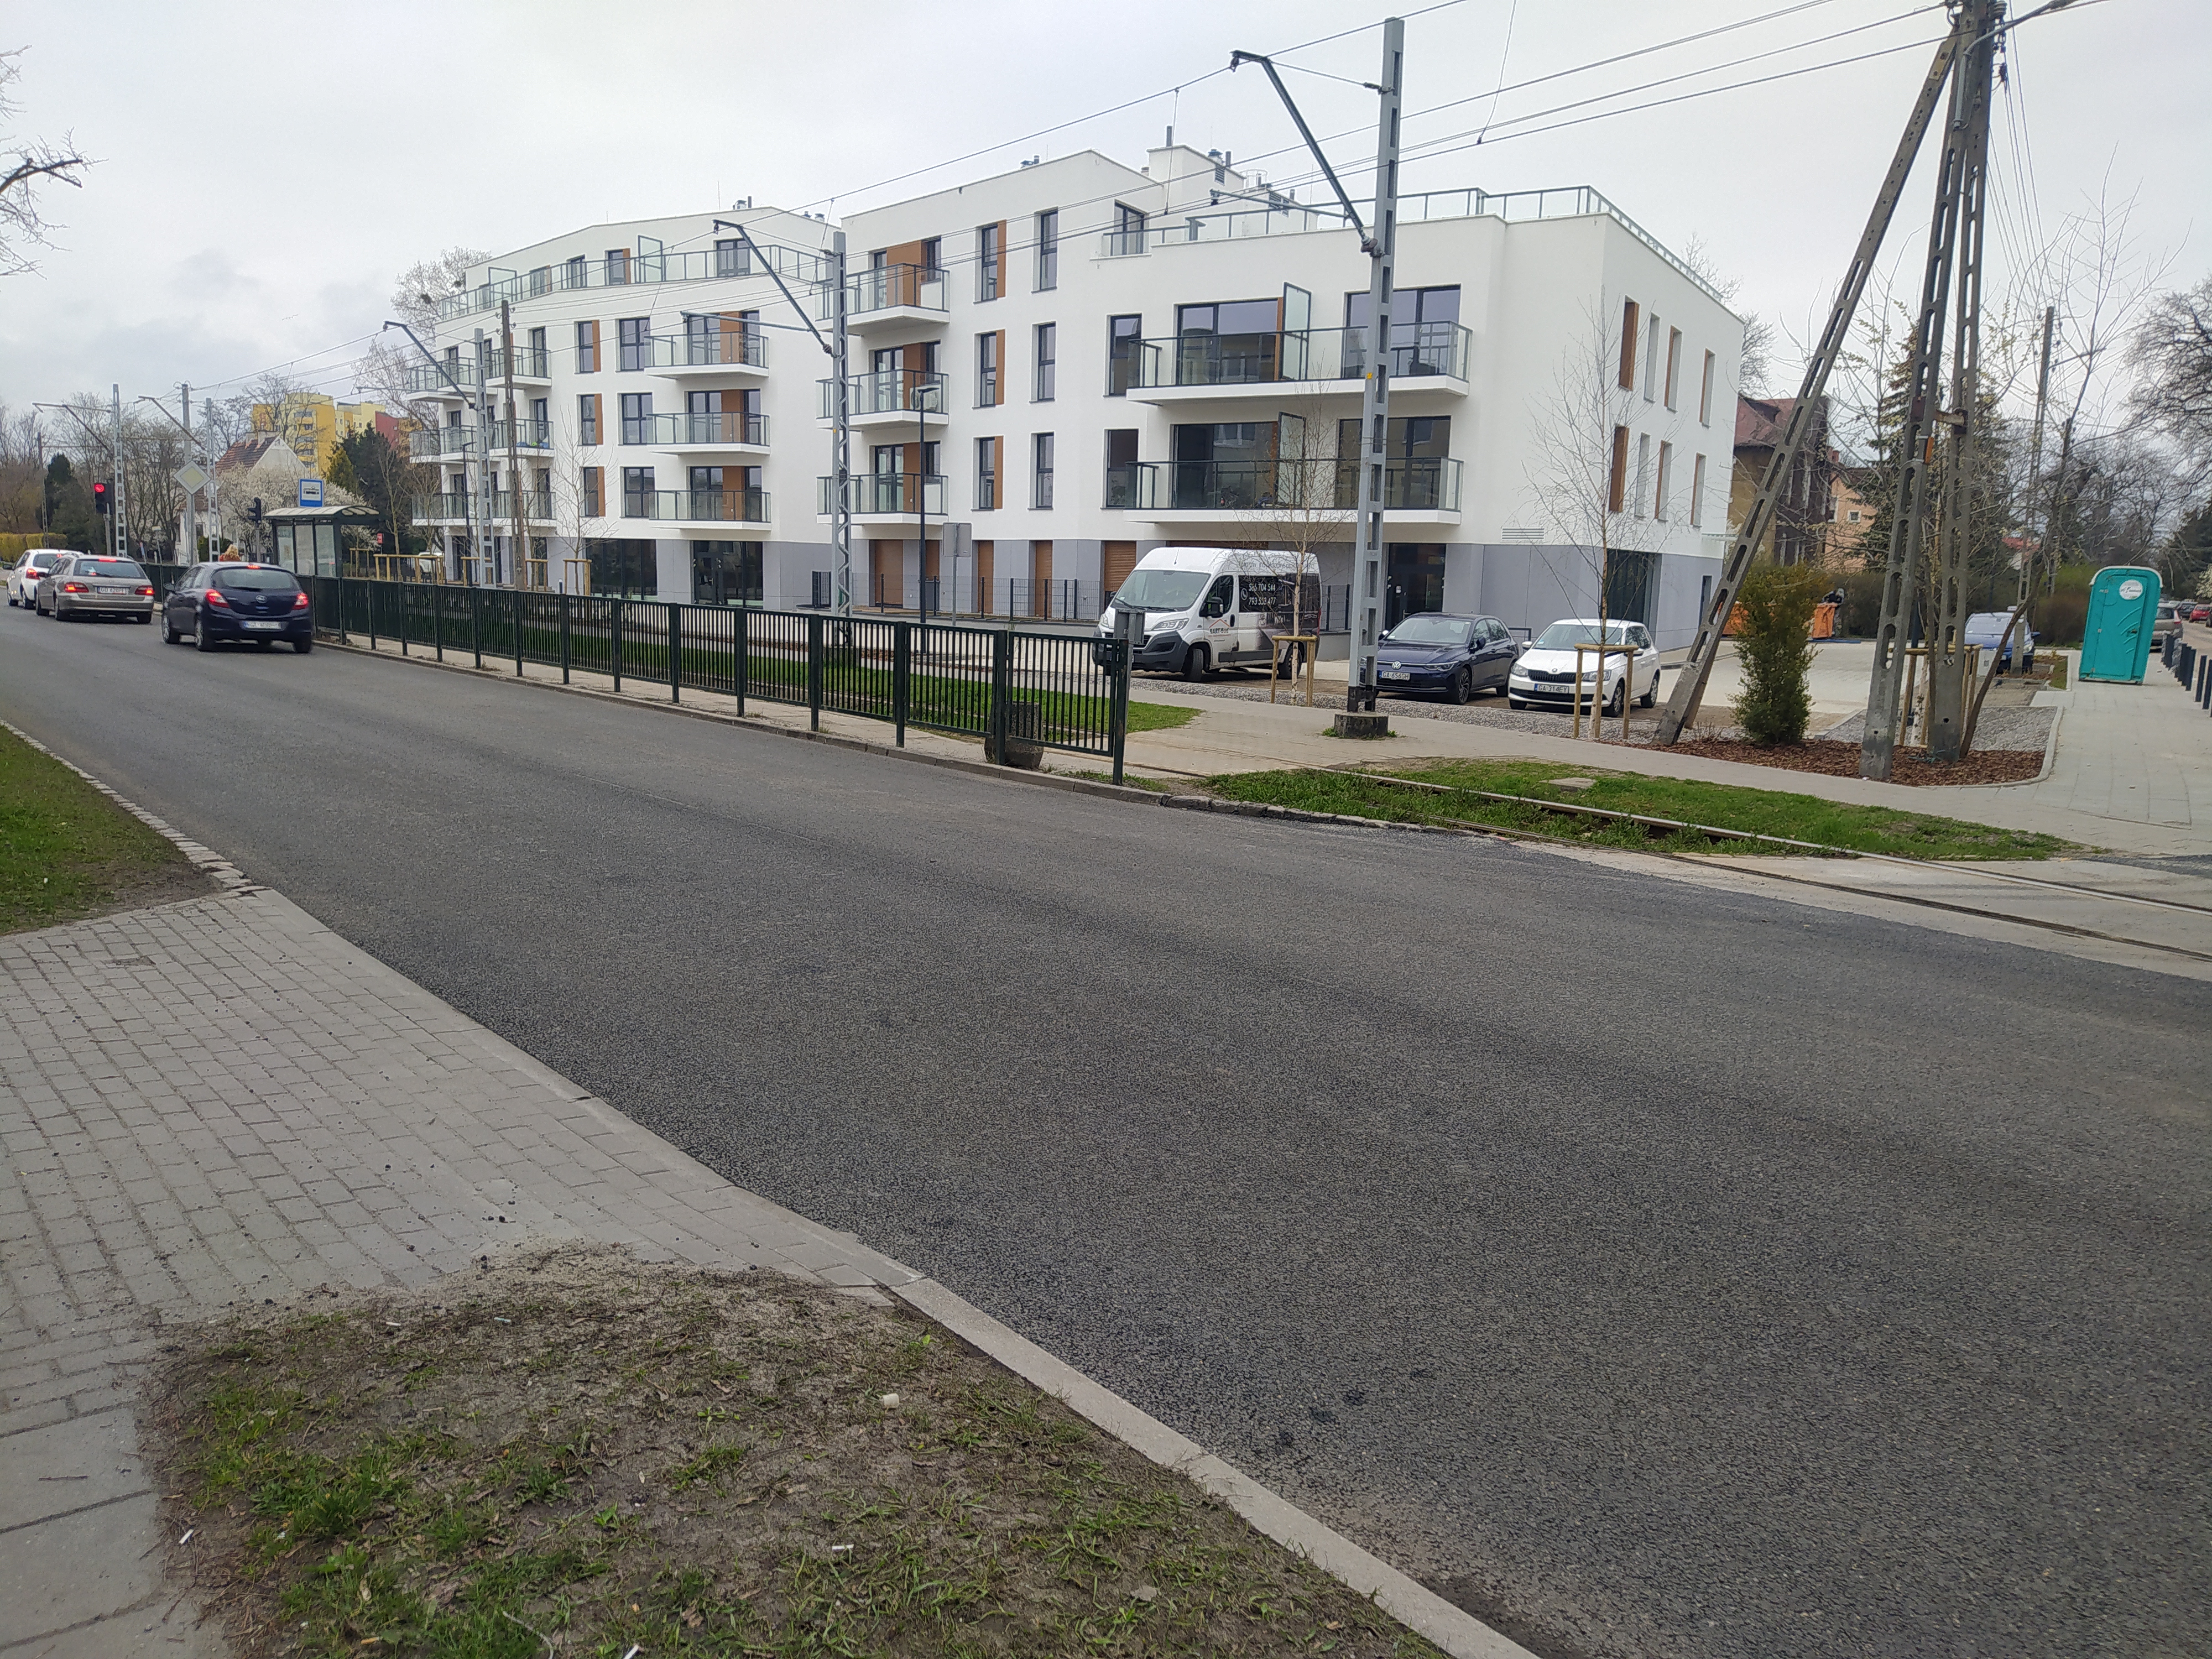 Zdjęcie przedstawia widok ulicy Gdańskiej po przebudowie